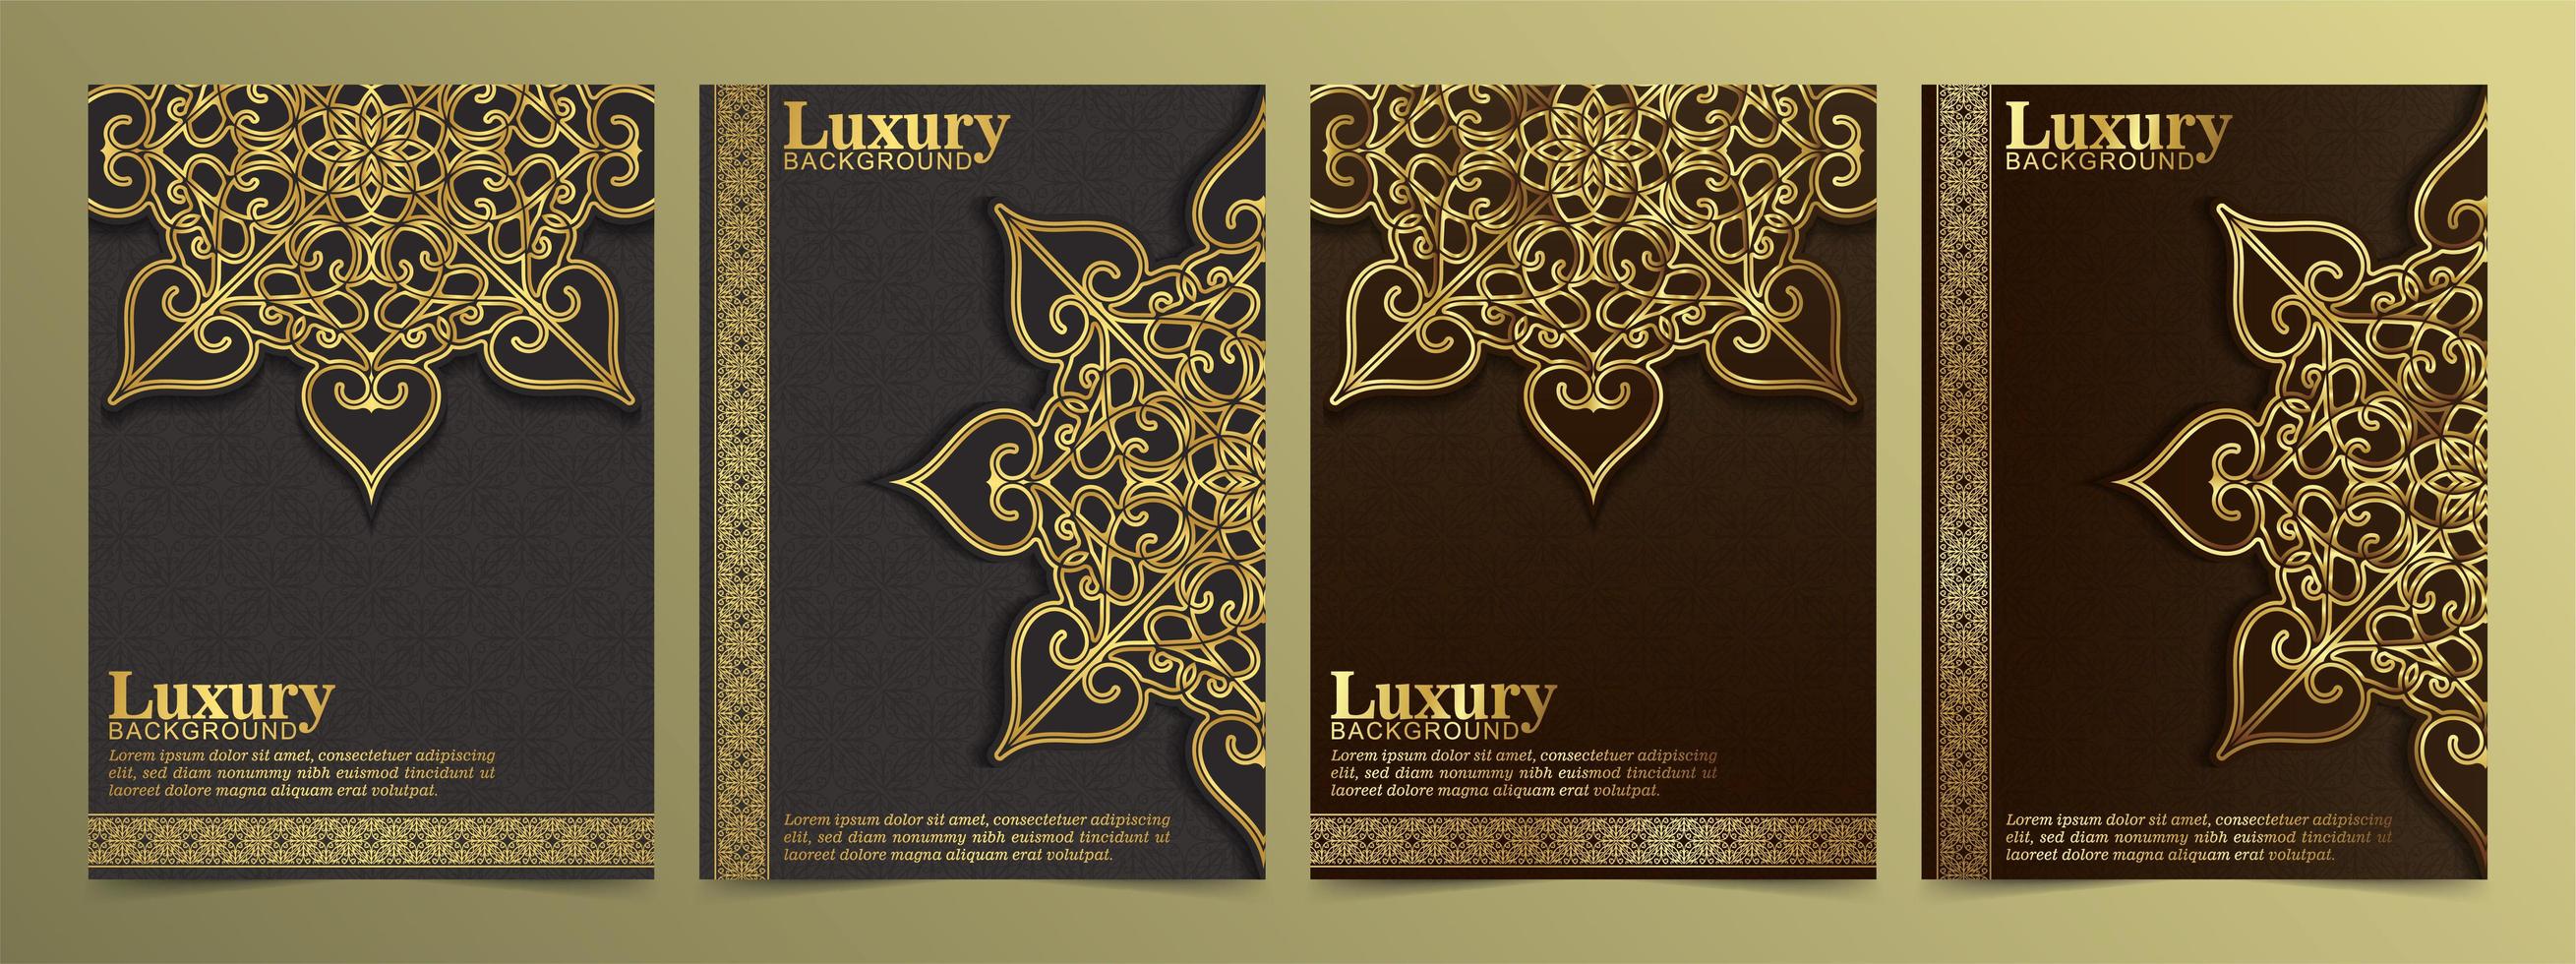 luxe gouden wenskaart set met mandala versieringen vector